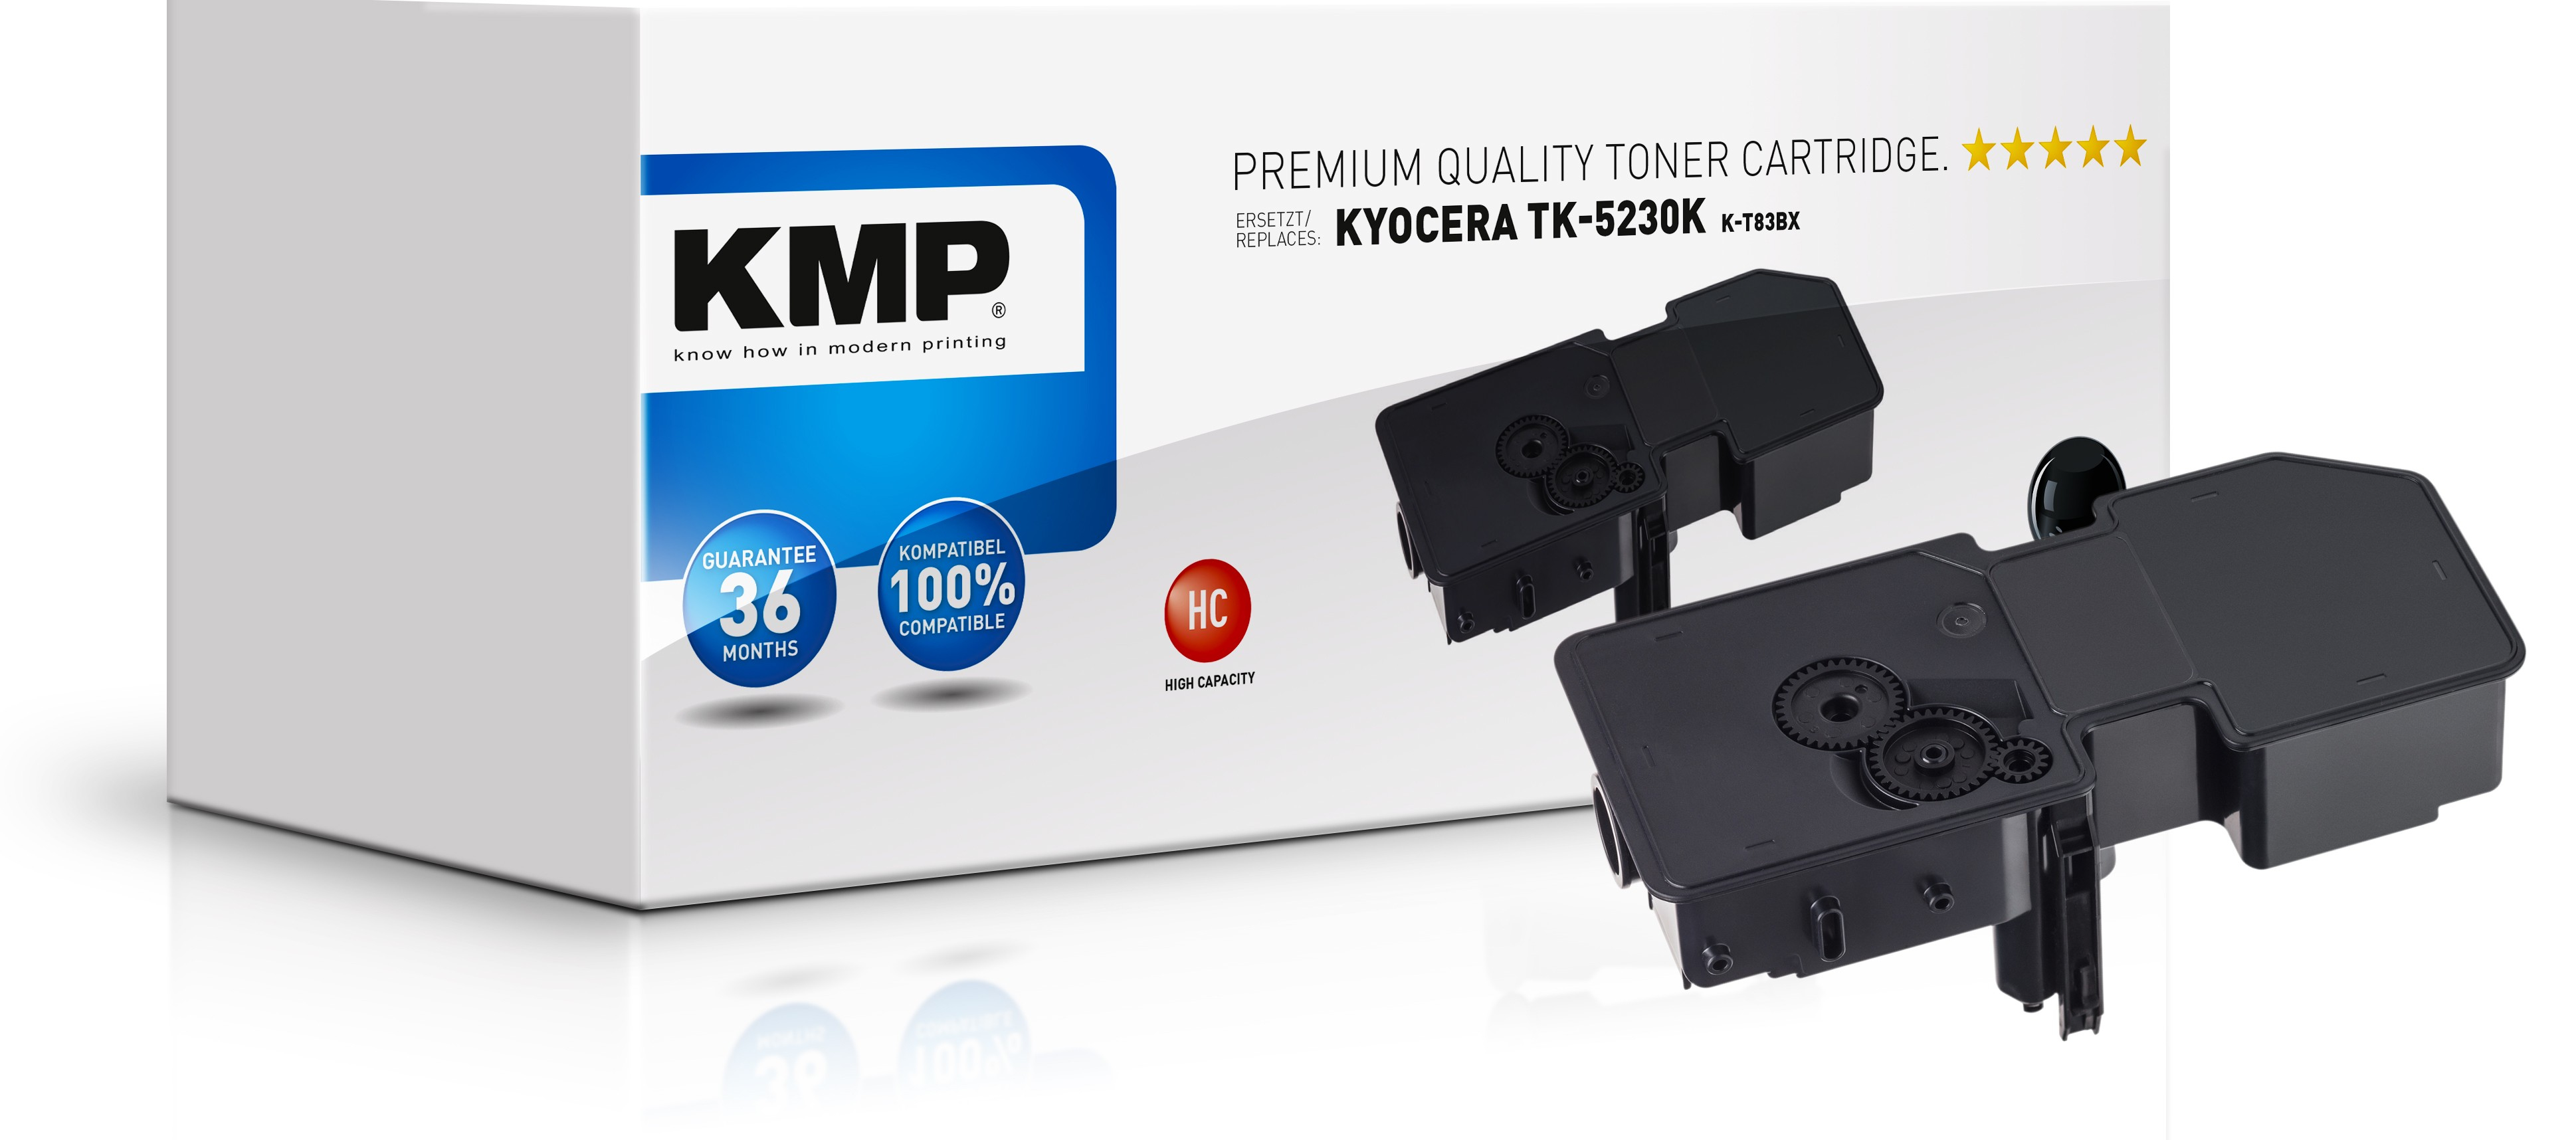 KMP K-T83BX - 2600 Seiten - Schwarz - 1 Stück(e)